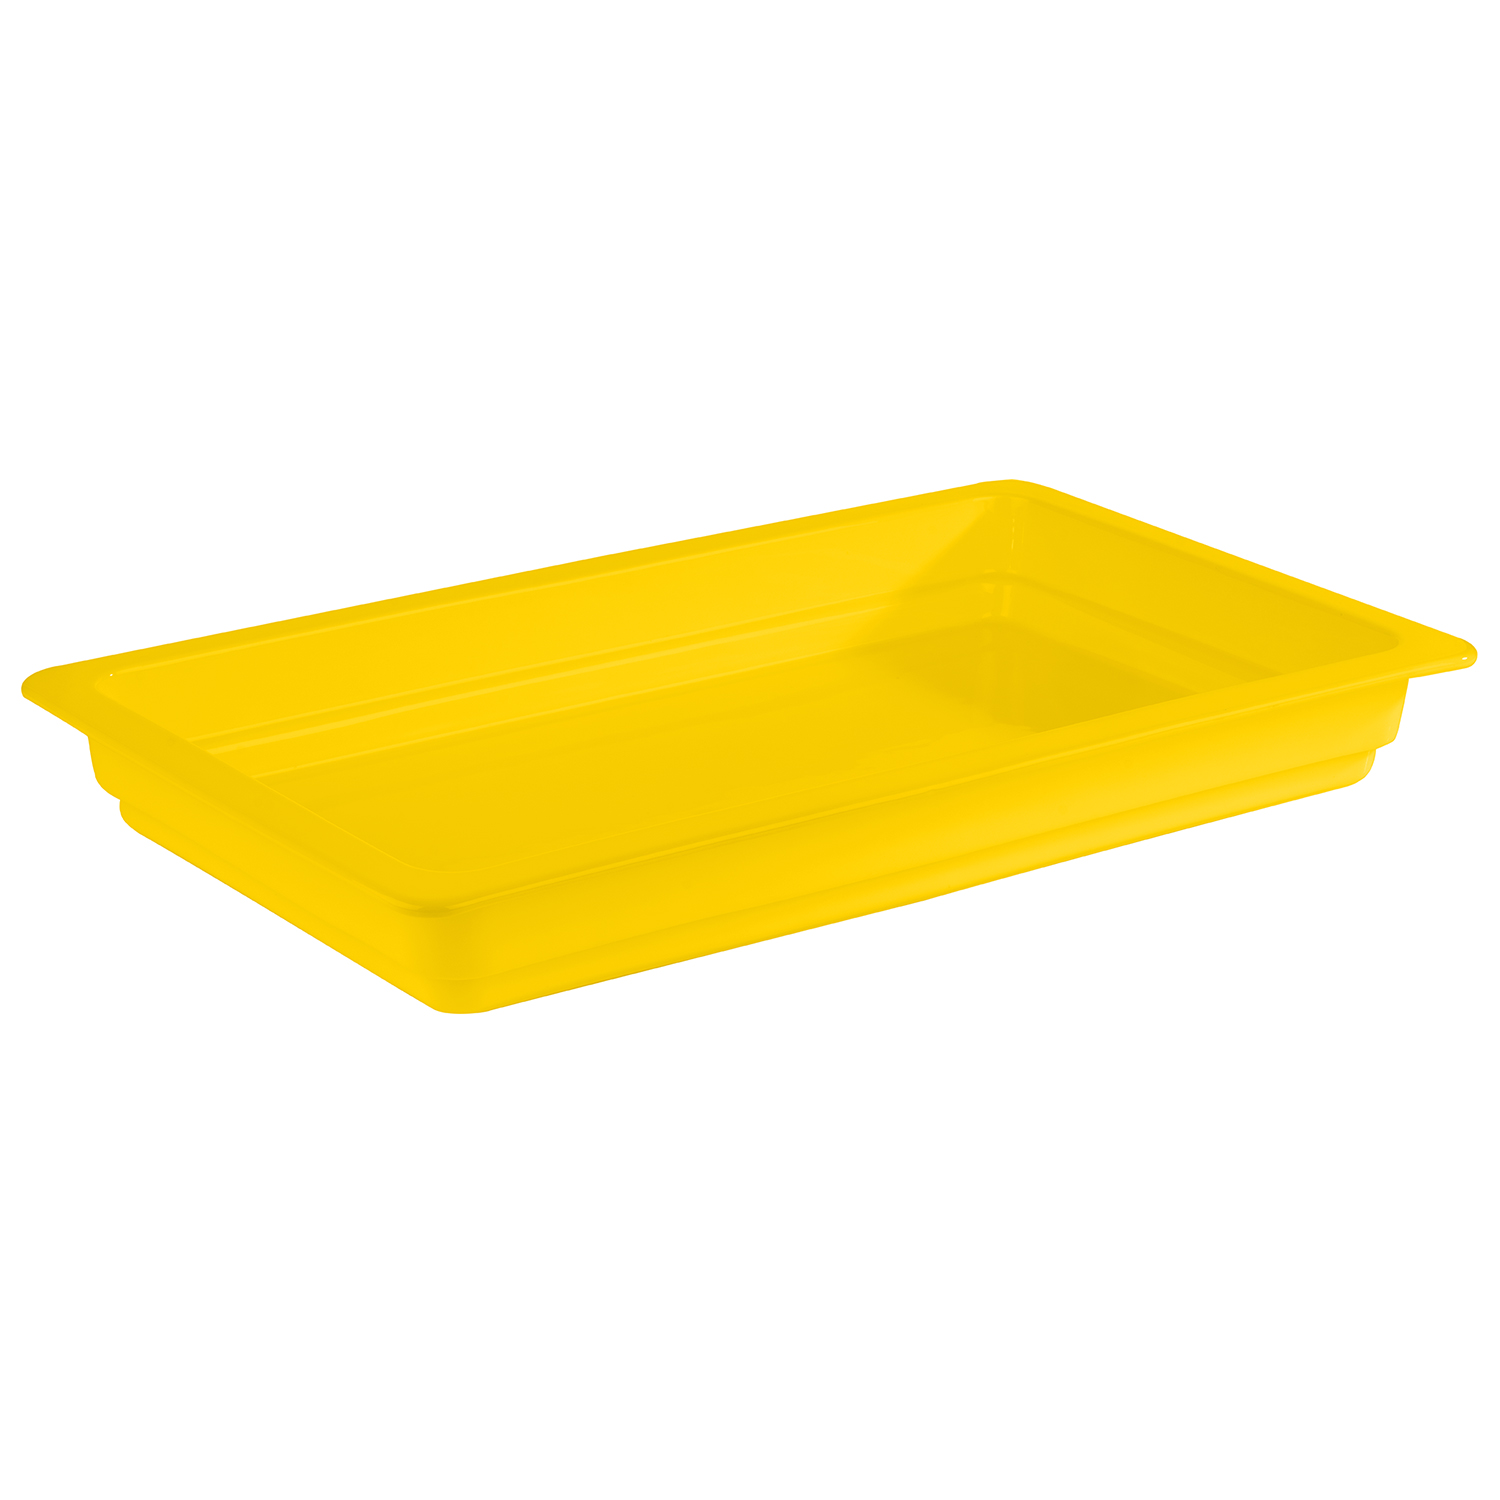 GN 1/1 Behälter, gelb, 53 x 32,5 cm, H: 6 cm                 